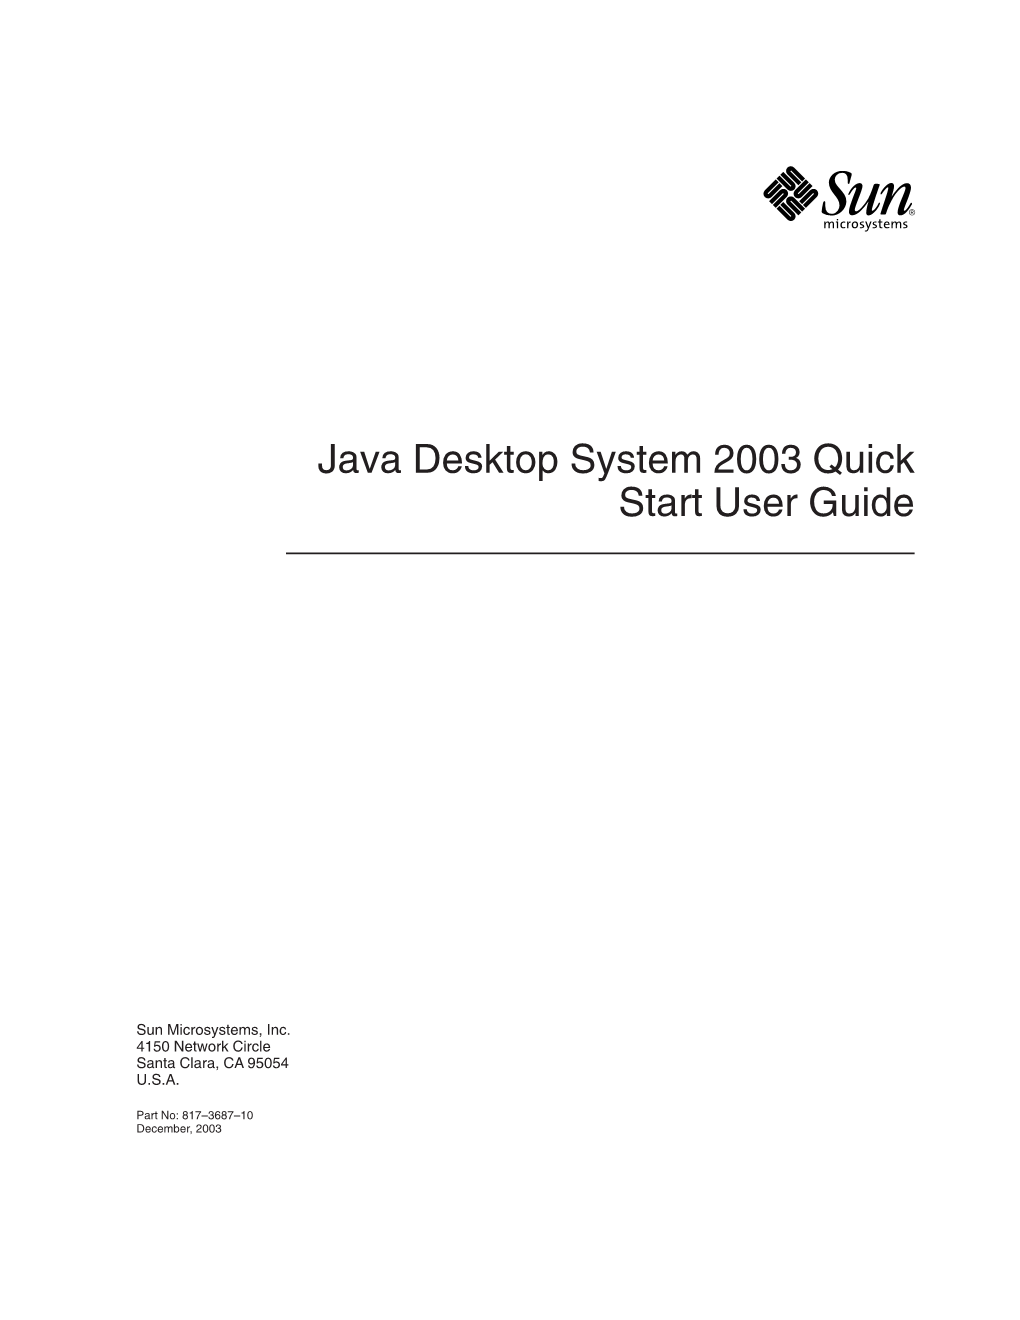 Java Desktop System 2003 Quick Start User Guide